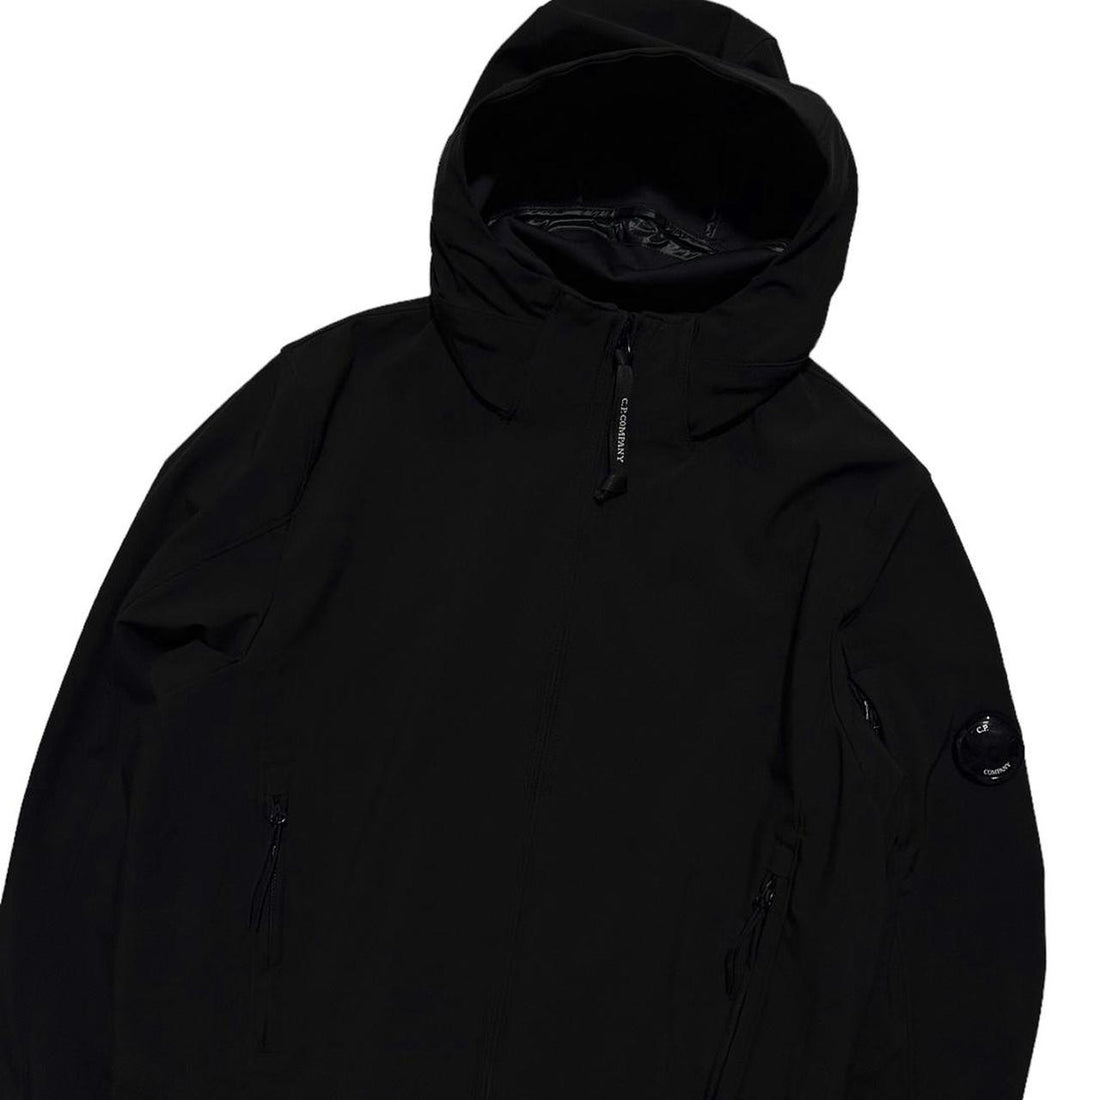 CP Company Black Soft Shell Jacket